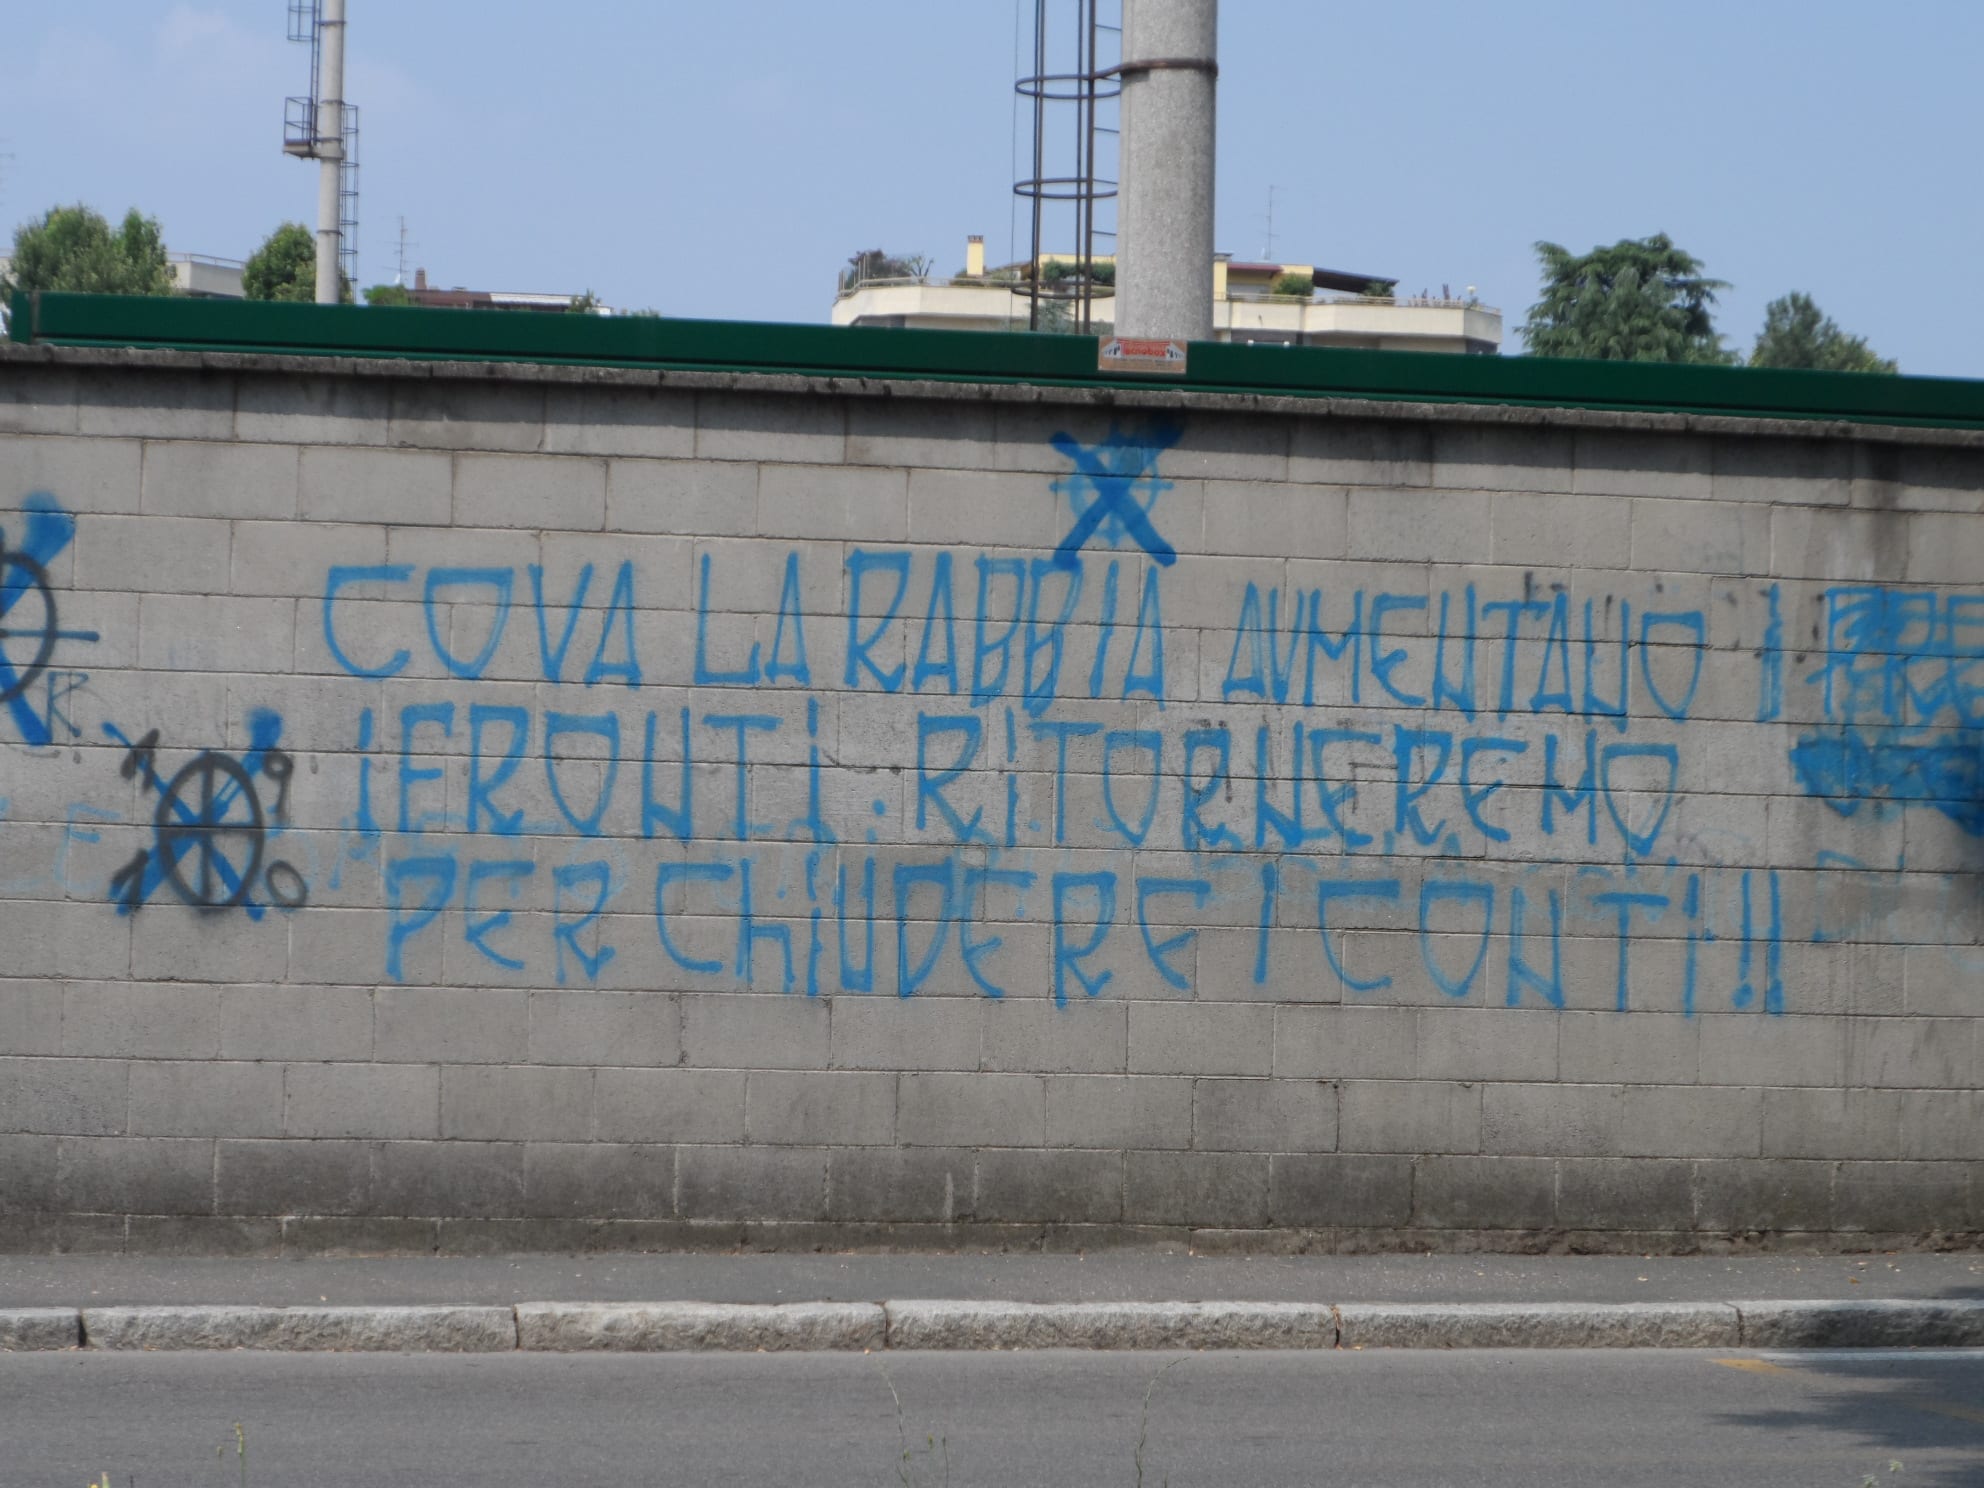 Fbc: “Cova la rabbia…” sui muri dello stadio